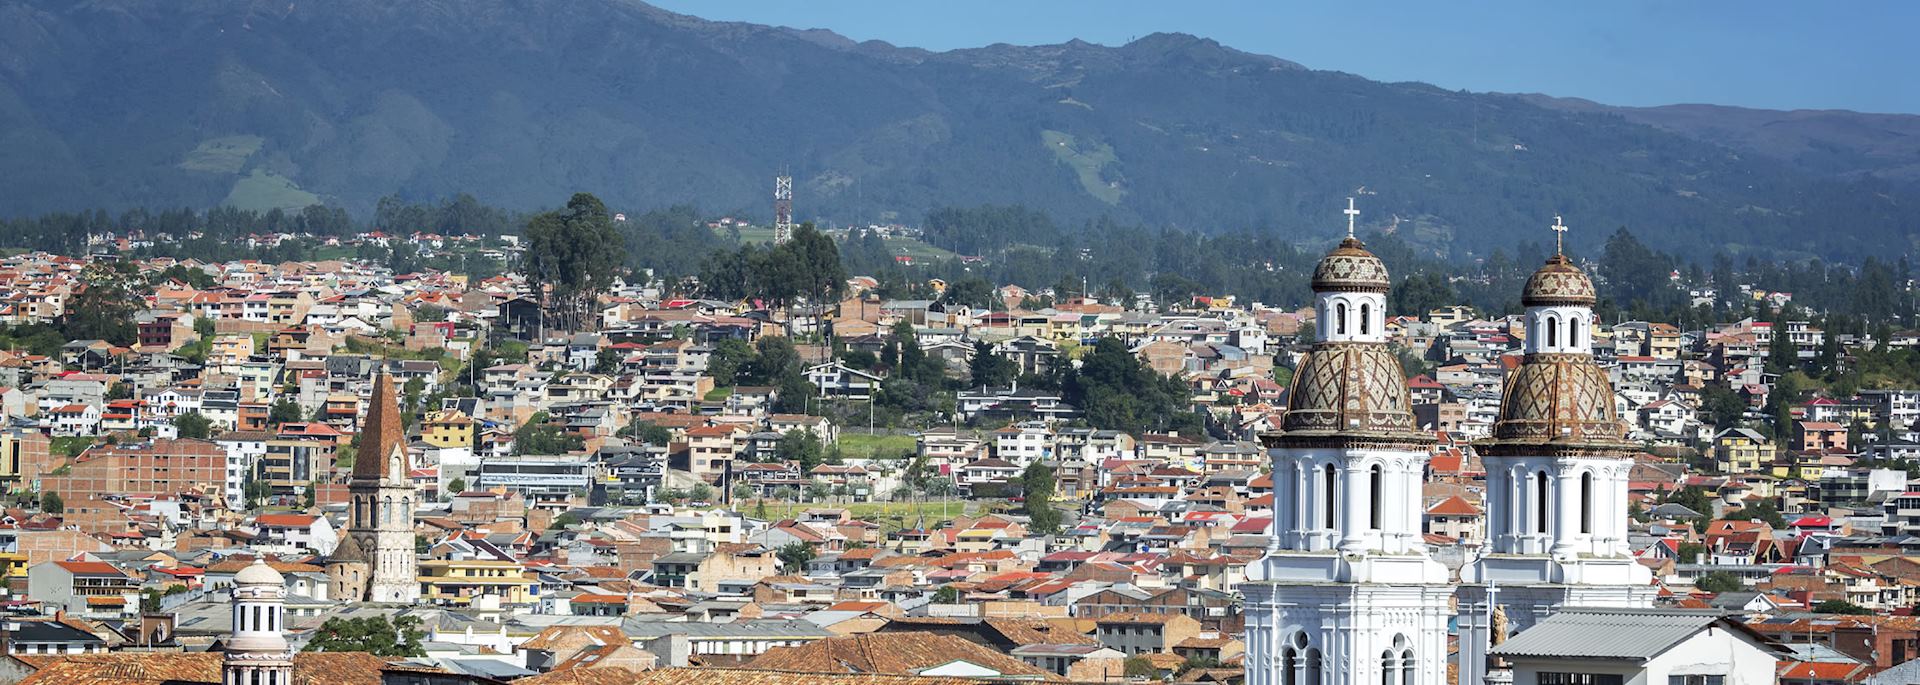 Cuenca in Ecuador